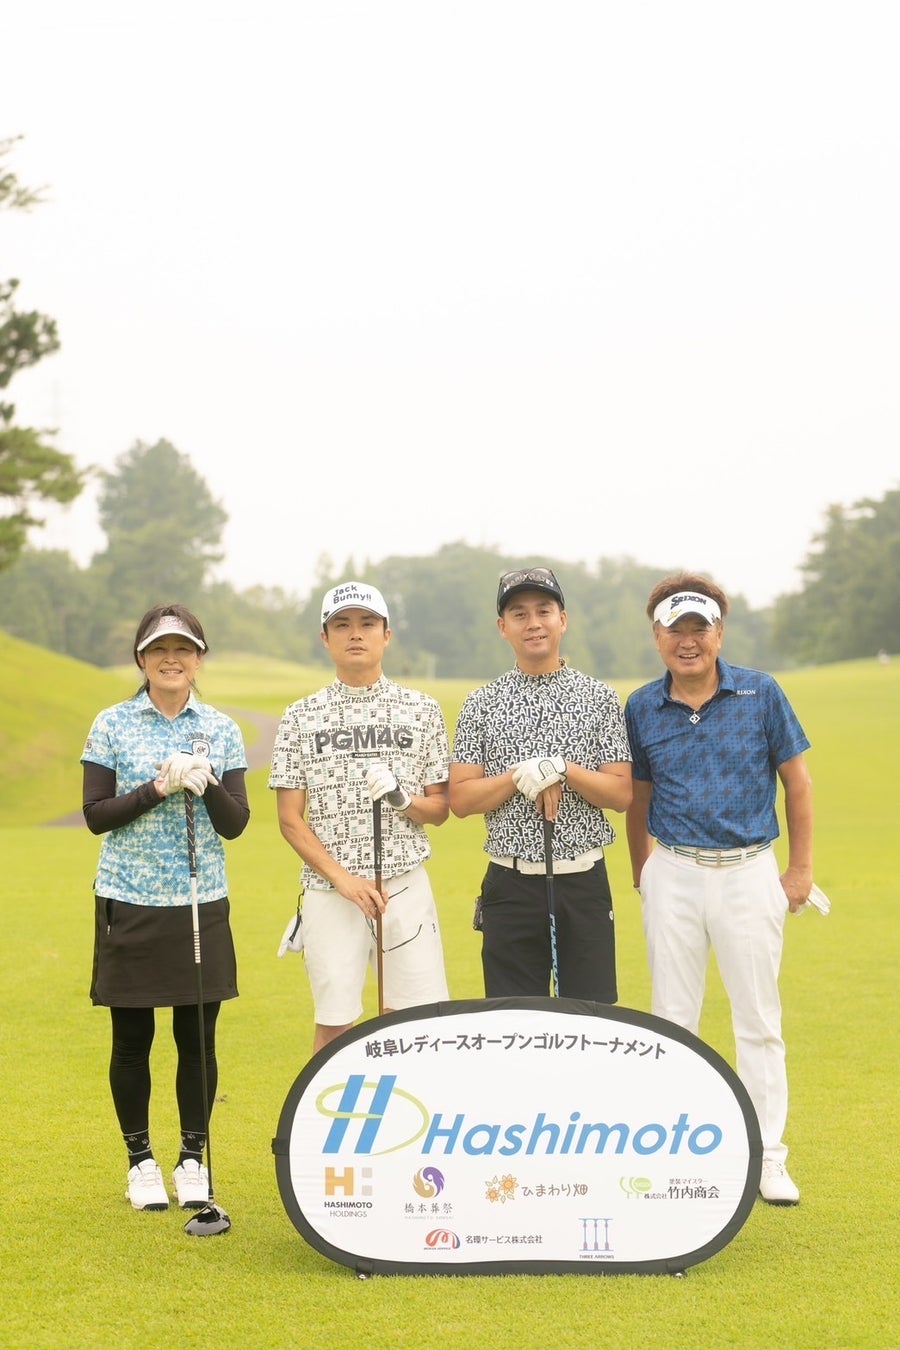 第1回 岐阜レディースオープン ゴルフトーナメント（GLOGT)が初開催‼︎